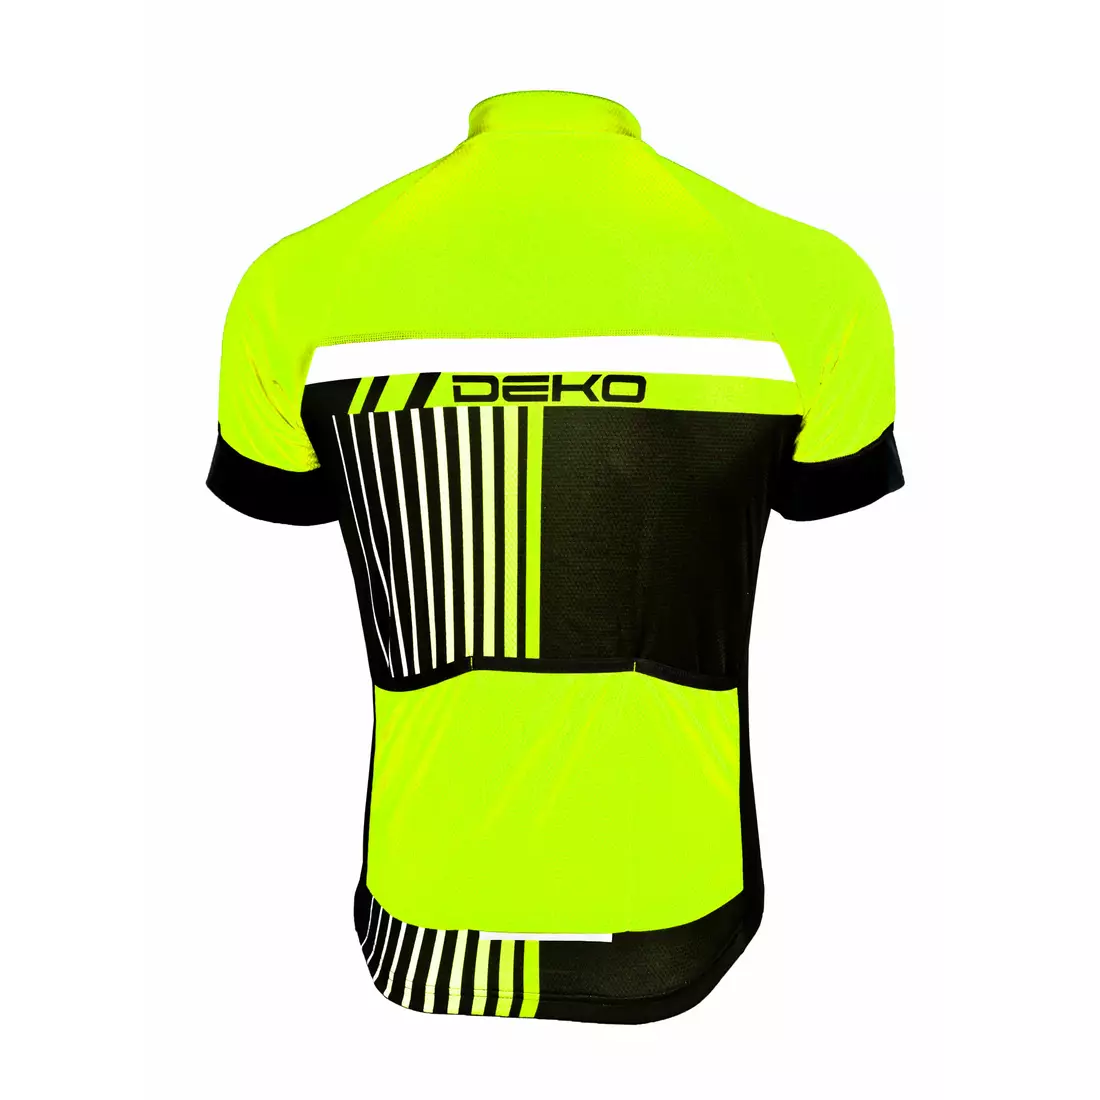 DEKO STYLE men's cycling jersey, black-fluorine